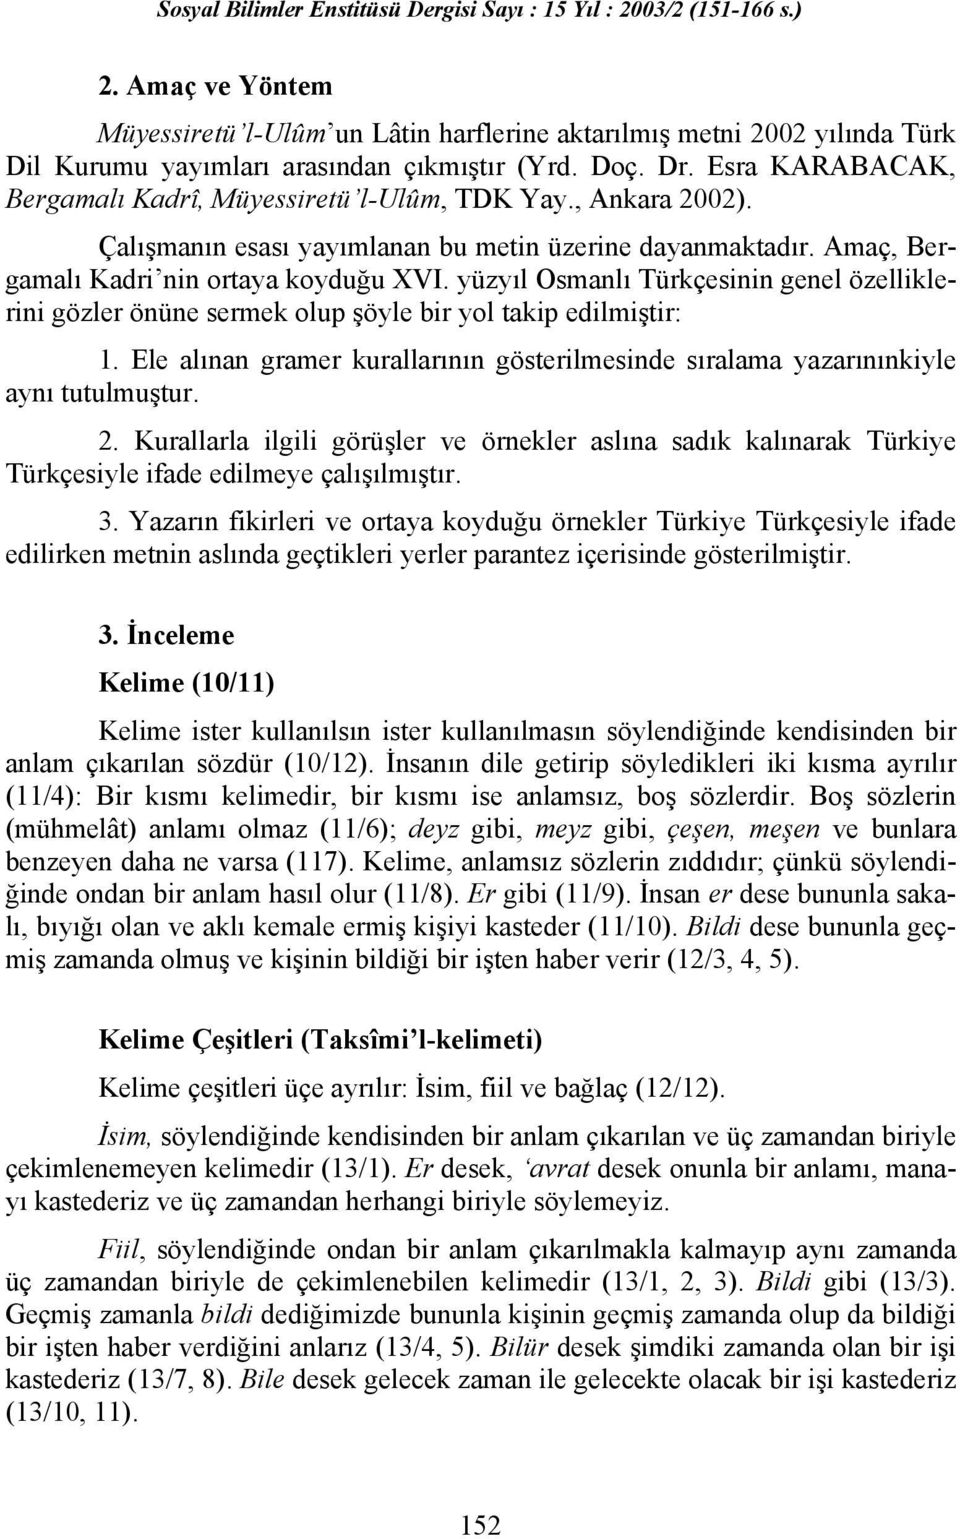 yüzyıl Osmanlı Türkçesinin genel özelliklerini gözler önüne sermek olup şöyle bir yol takip edilmiştir: 1. Ele alınan gramer kurallarının gösterilmesinde sıralama yazarınınkiyle aynı tutulmuştur. 2.